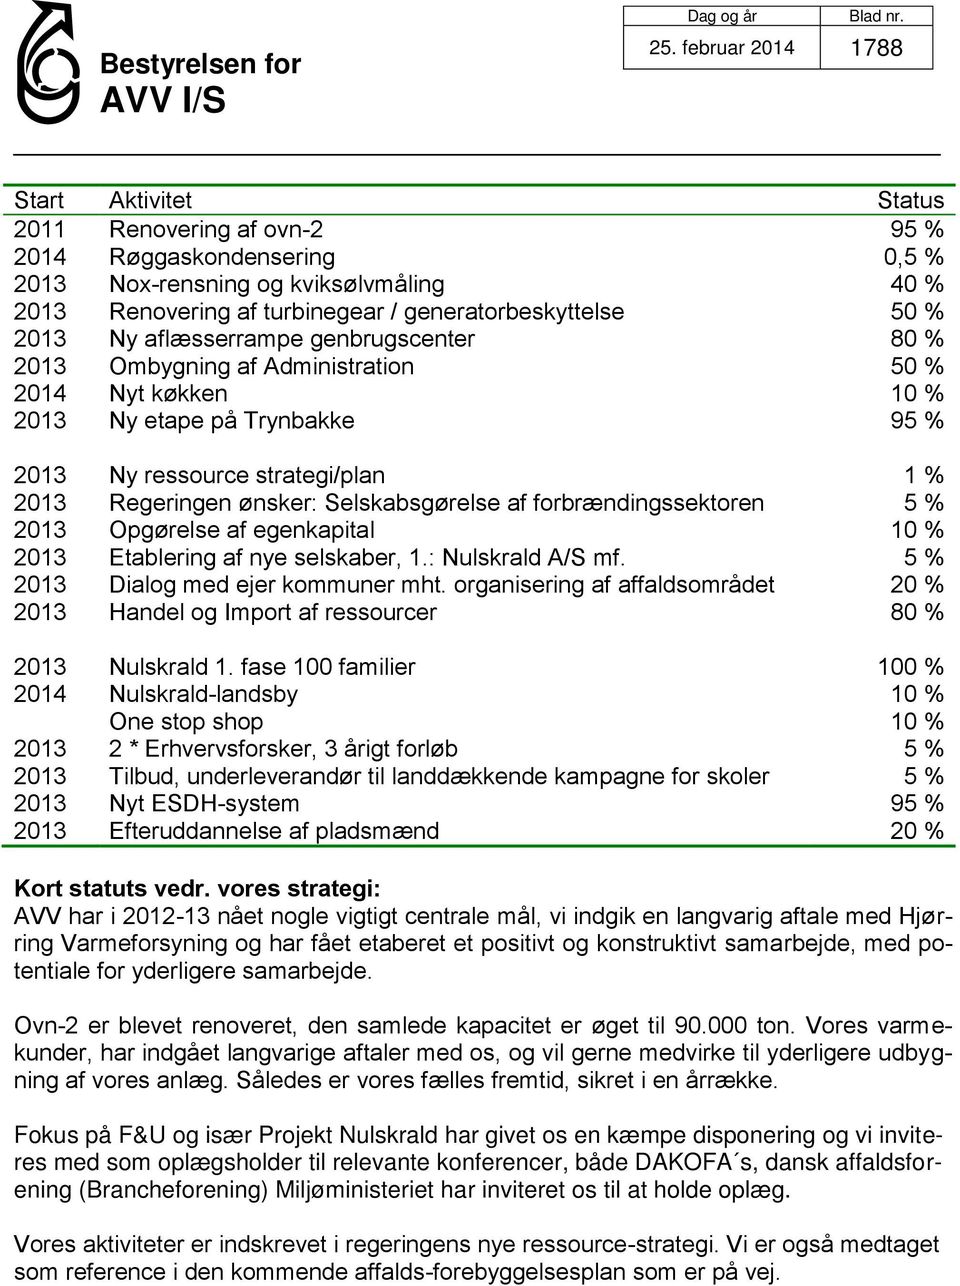 Selskabsgørelse af forbrændingssektoren 5 % 2013 Opgørelse af egenkapital 10 % 2013 Etablering af nye selskaber, 1.: Nulskrald A/S mf. 5 % 2013 Dialog med ejer kommuner mht.